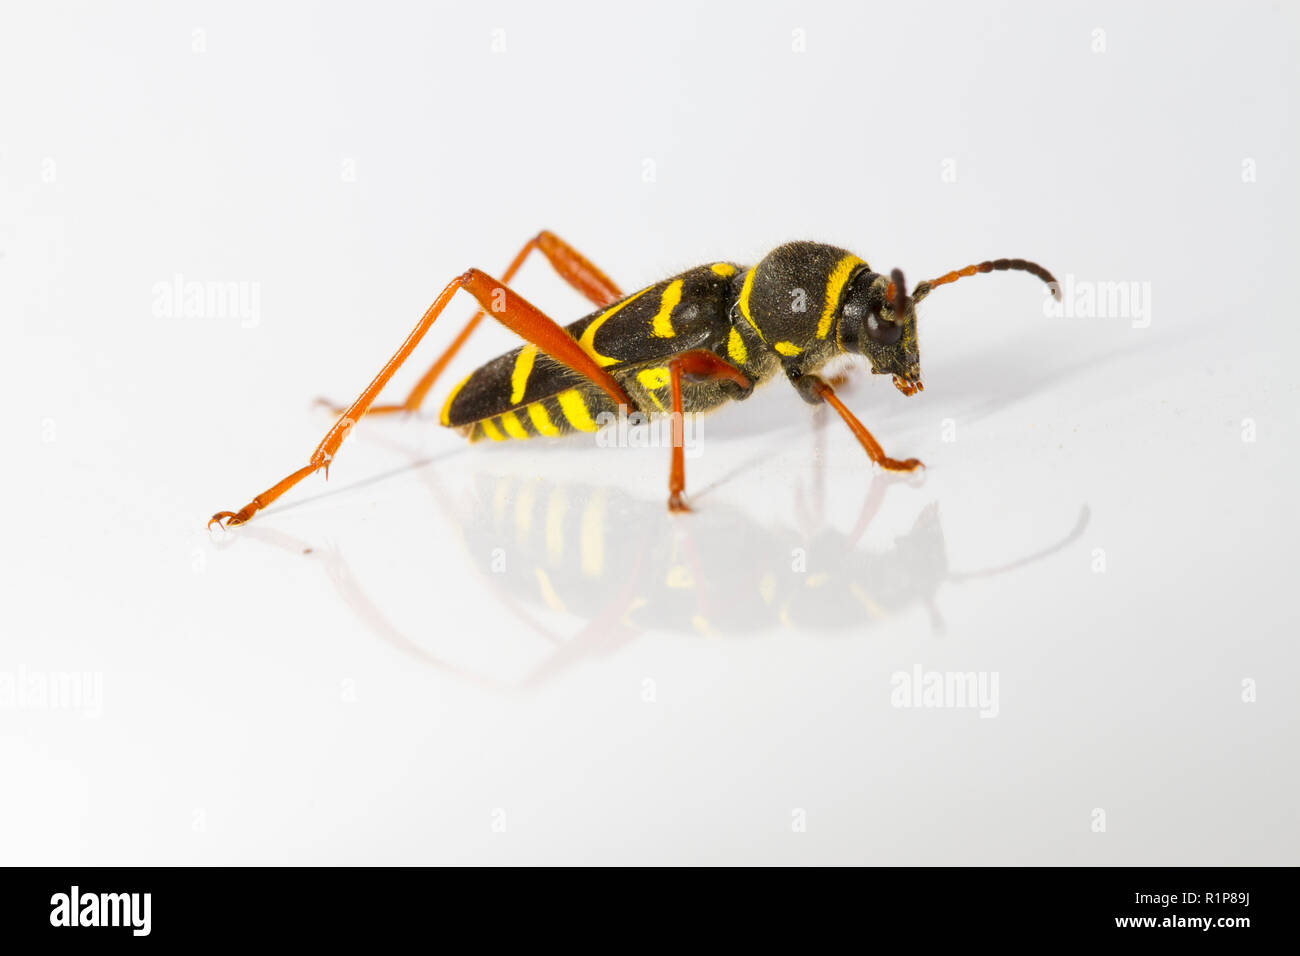 Wasp beetle (Clytus arietis), per adulti di insetti vivi fotografato su uno sfondo bianco. Powys, Galles. Giugno. Foto Stock